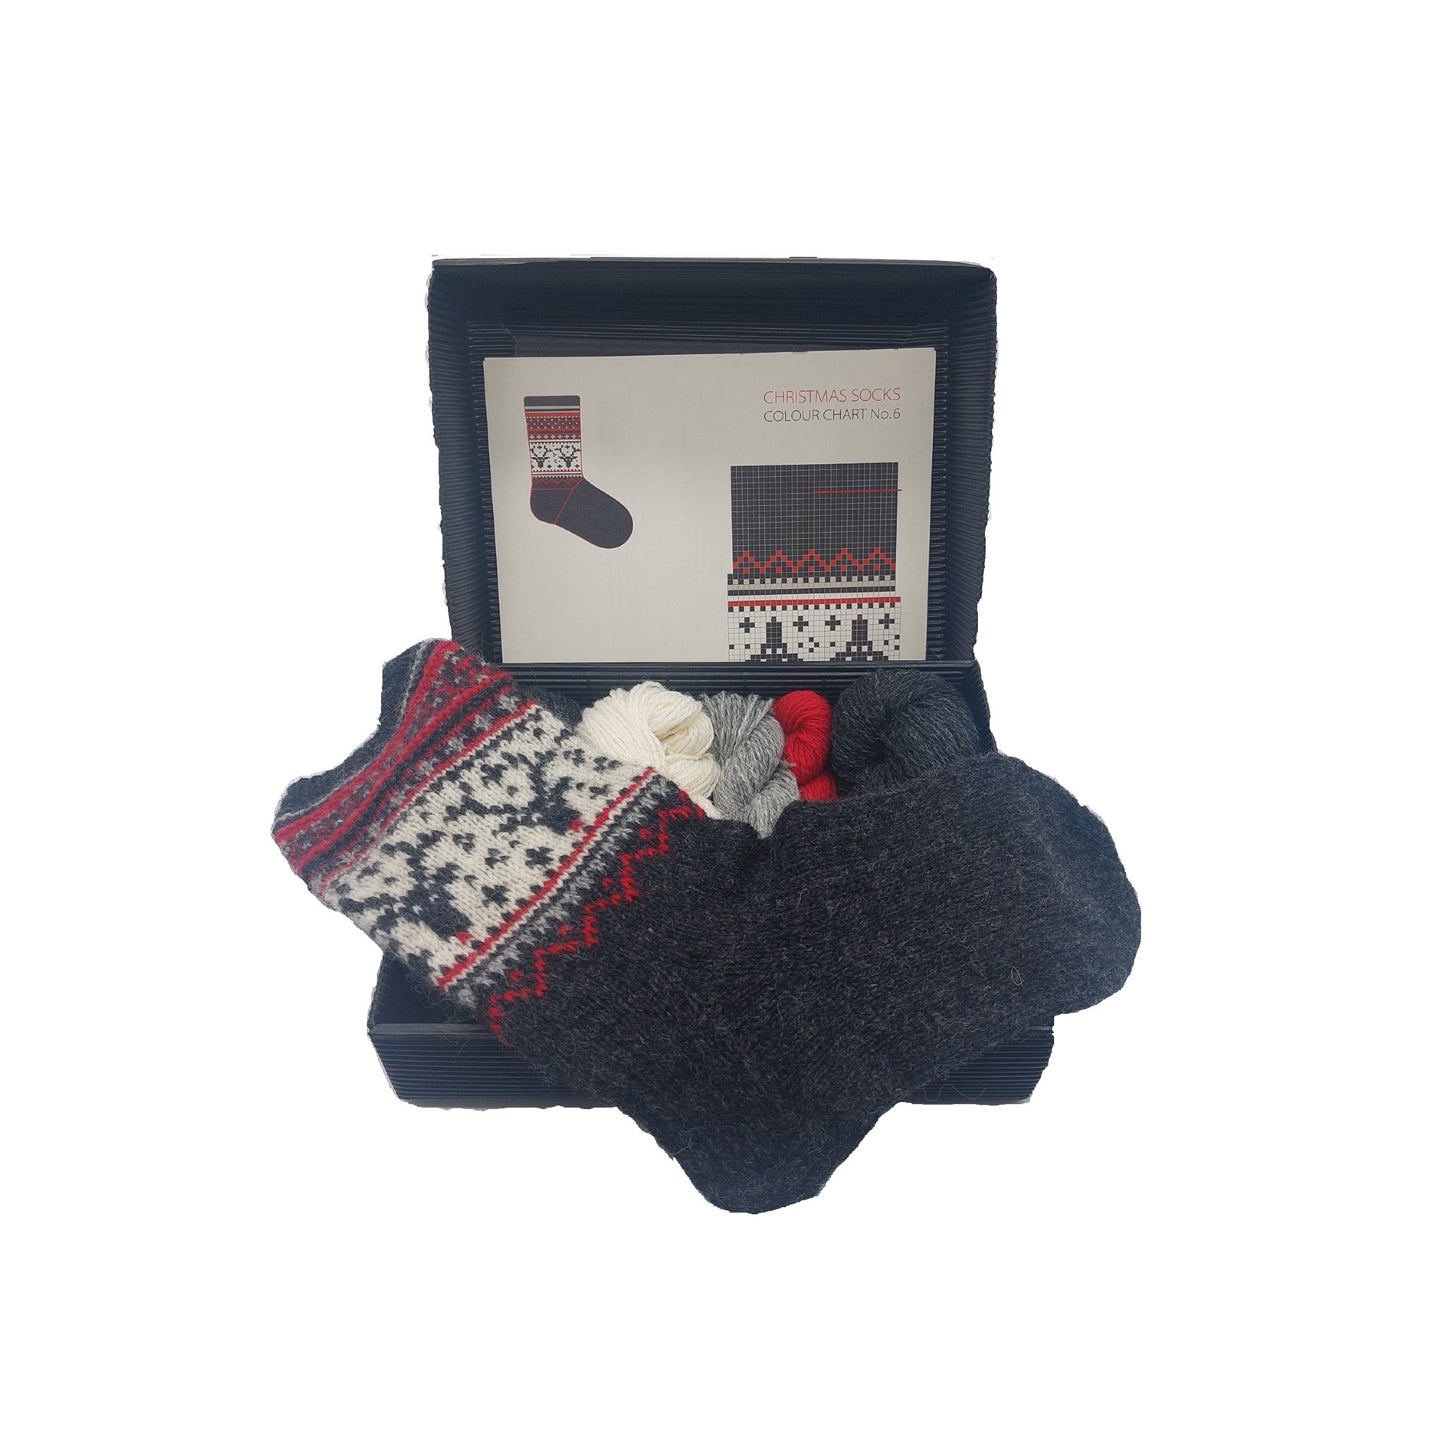 Christmas socks knitting kit Nr.6